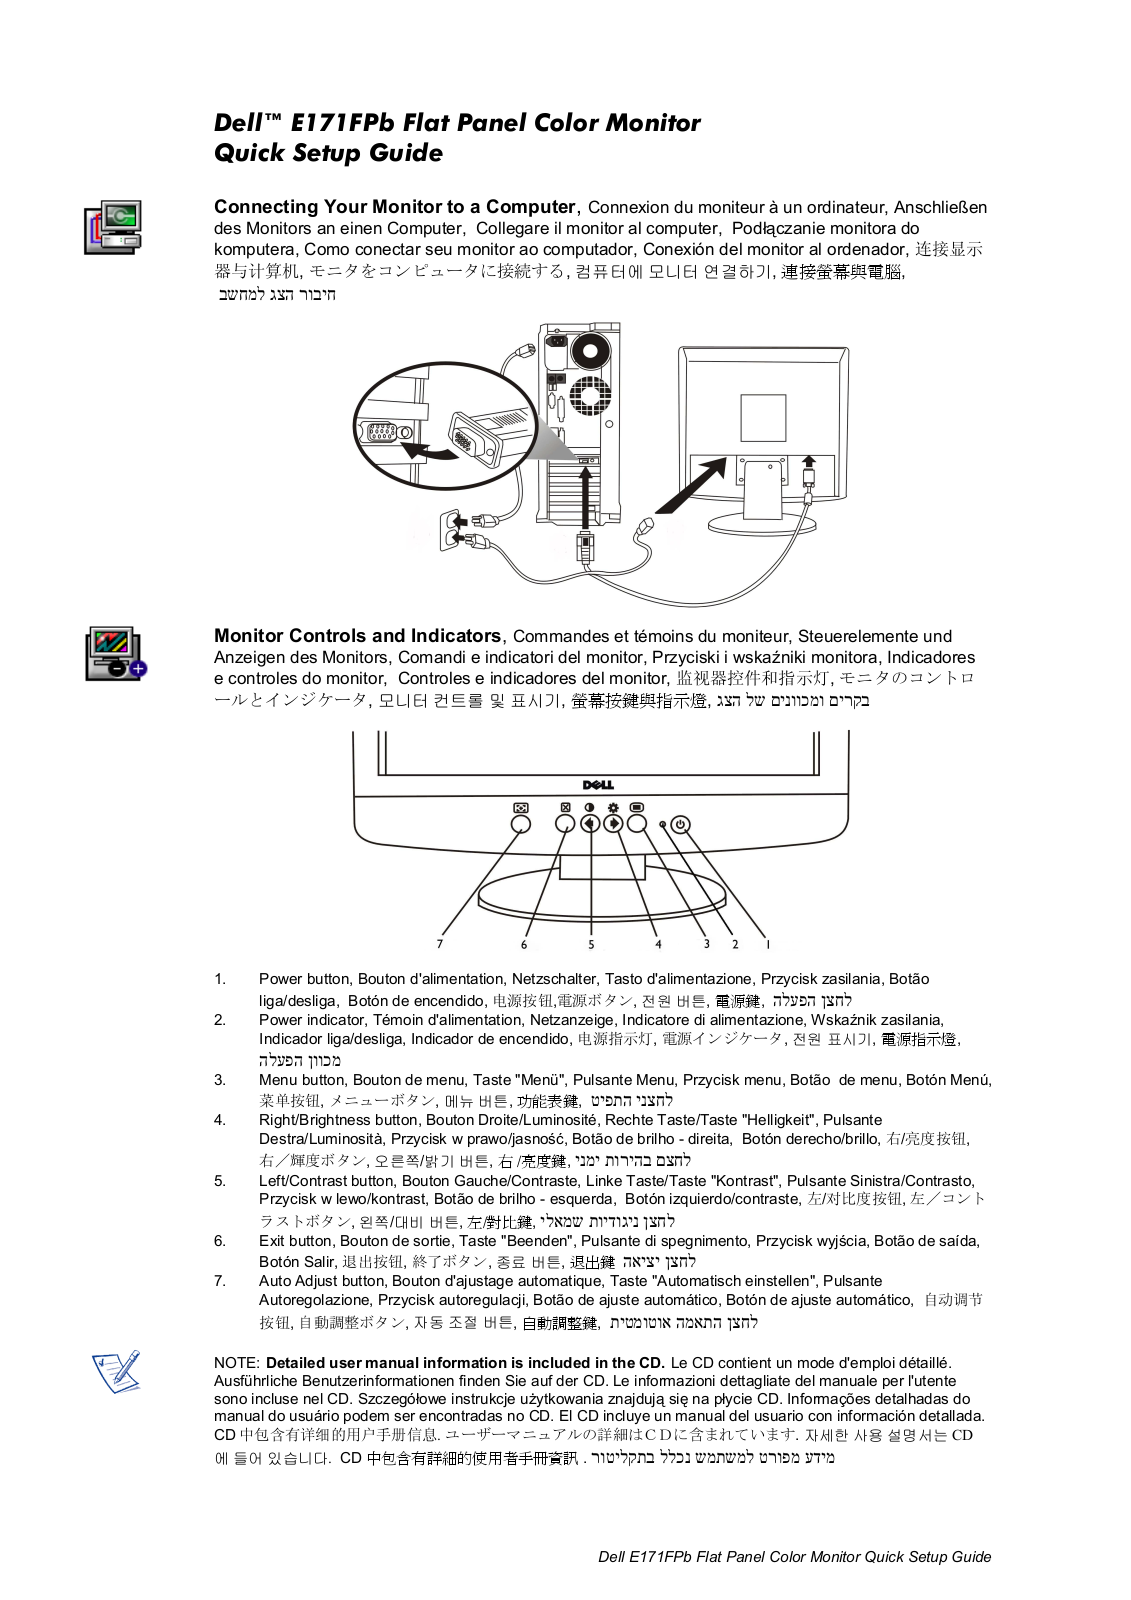 Dell E171FPb User Manual